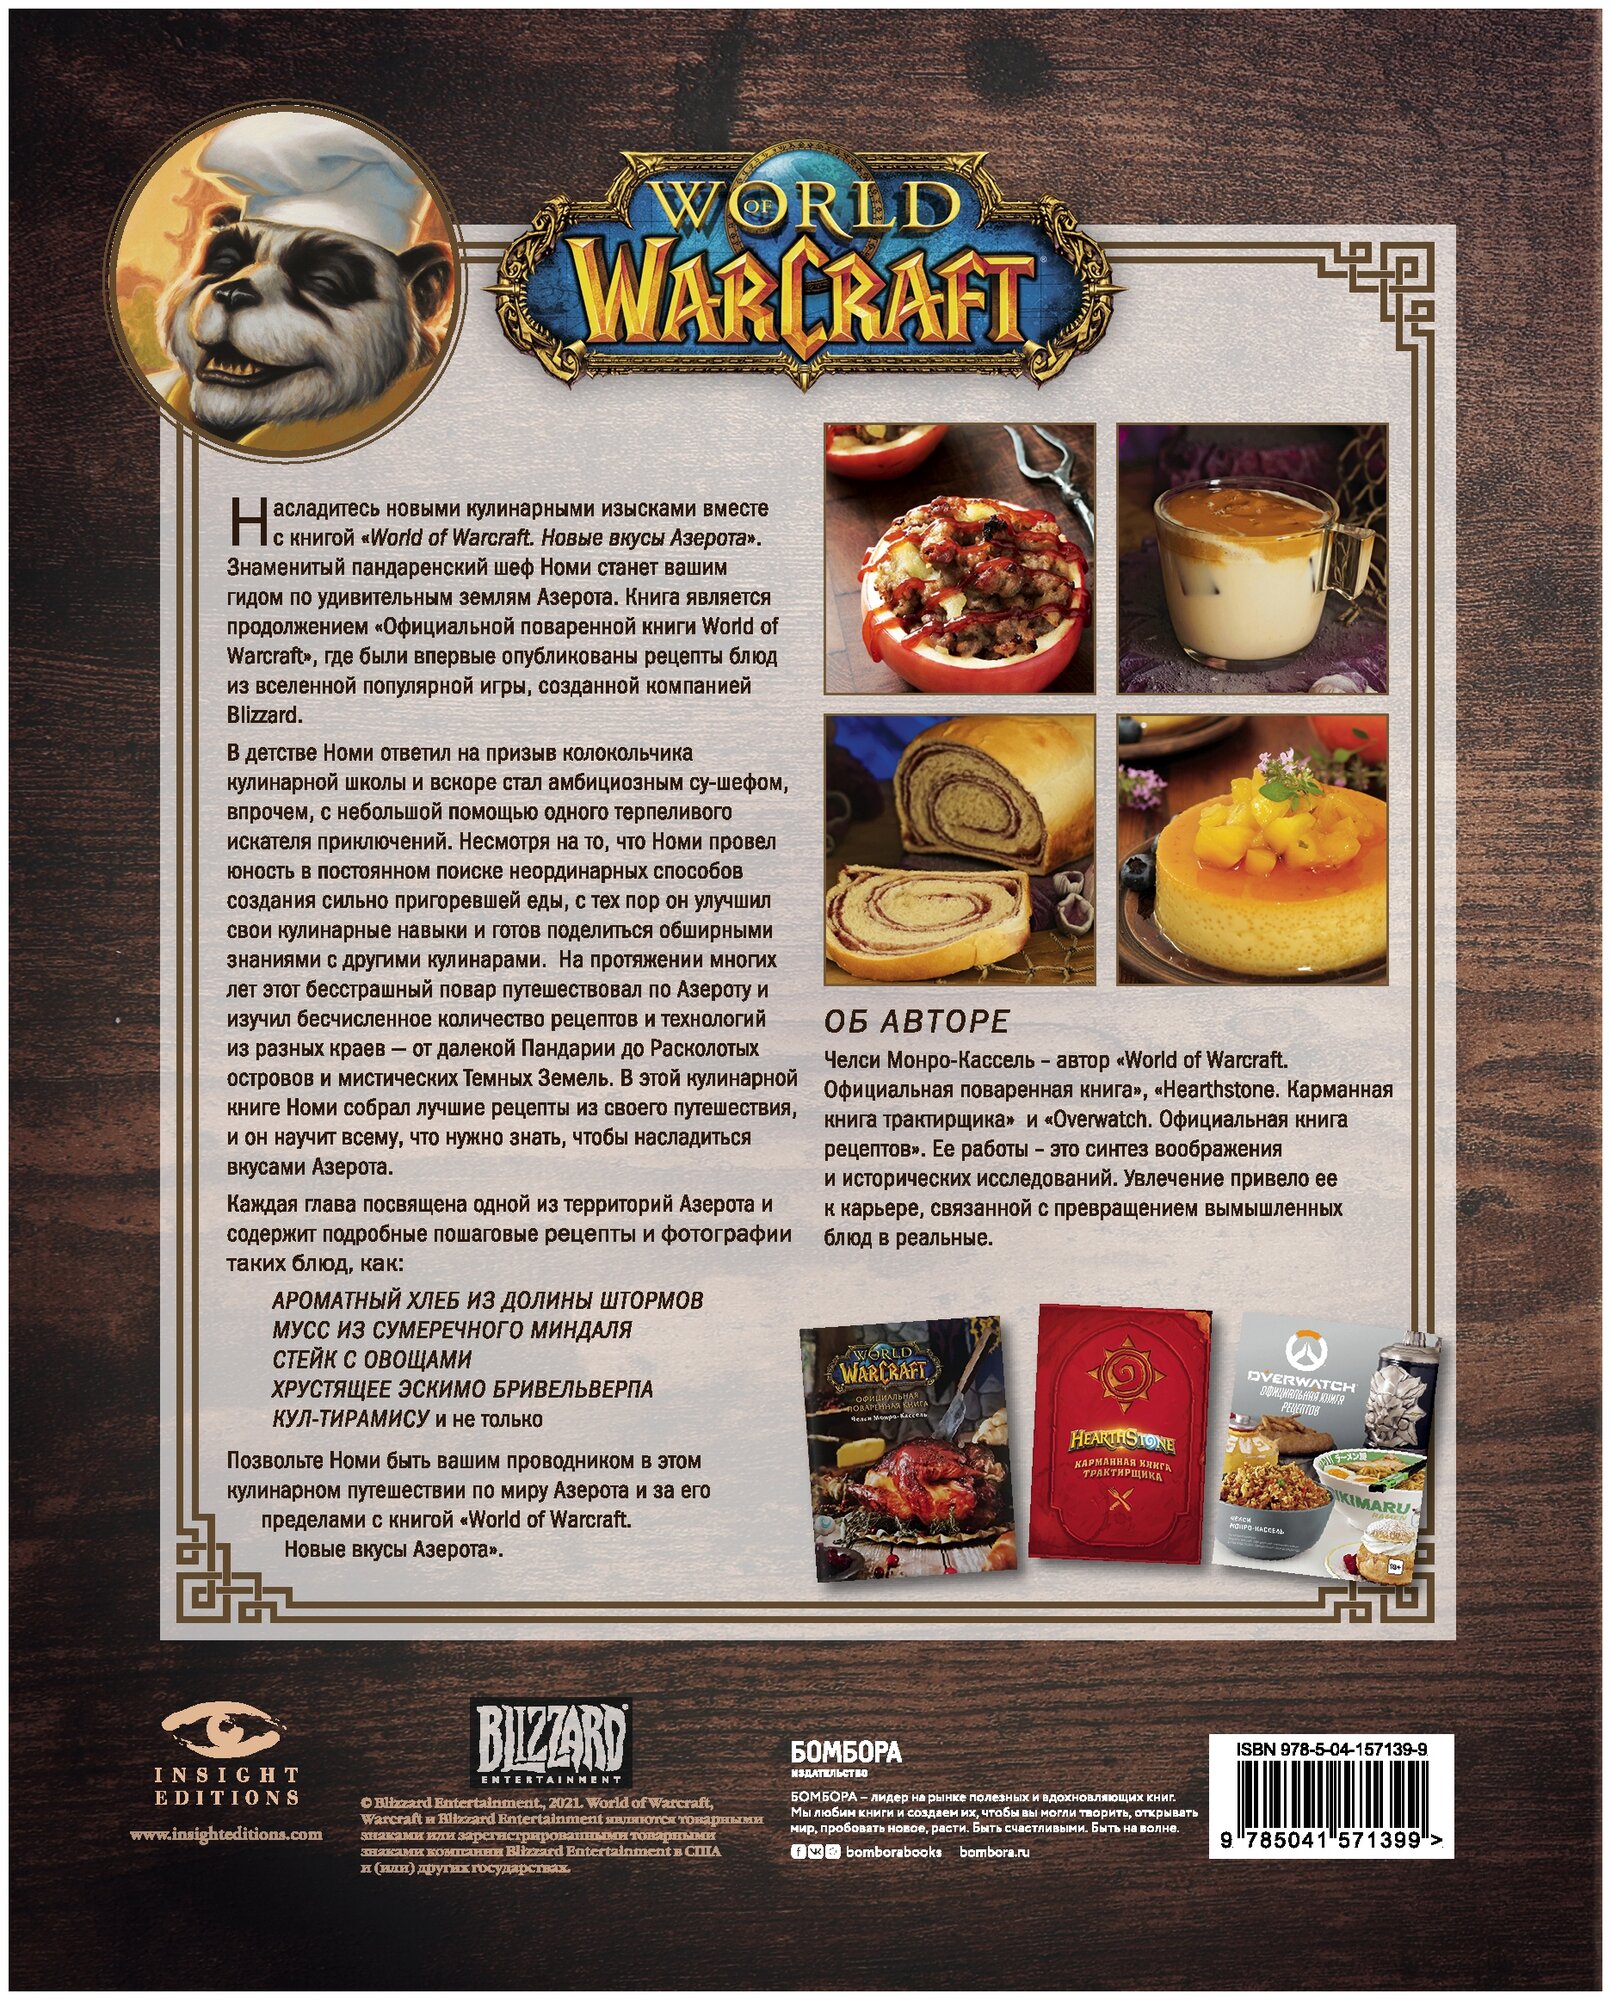 World of Warcraft. Новые вкусы Азерота. Официальная поваренная книга - фото №19